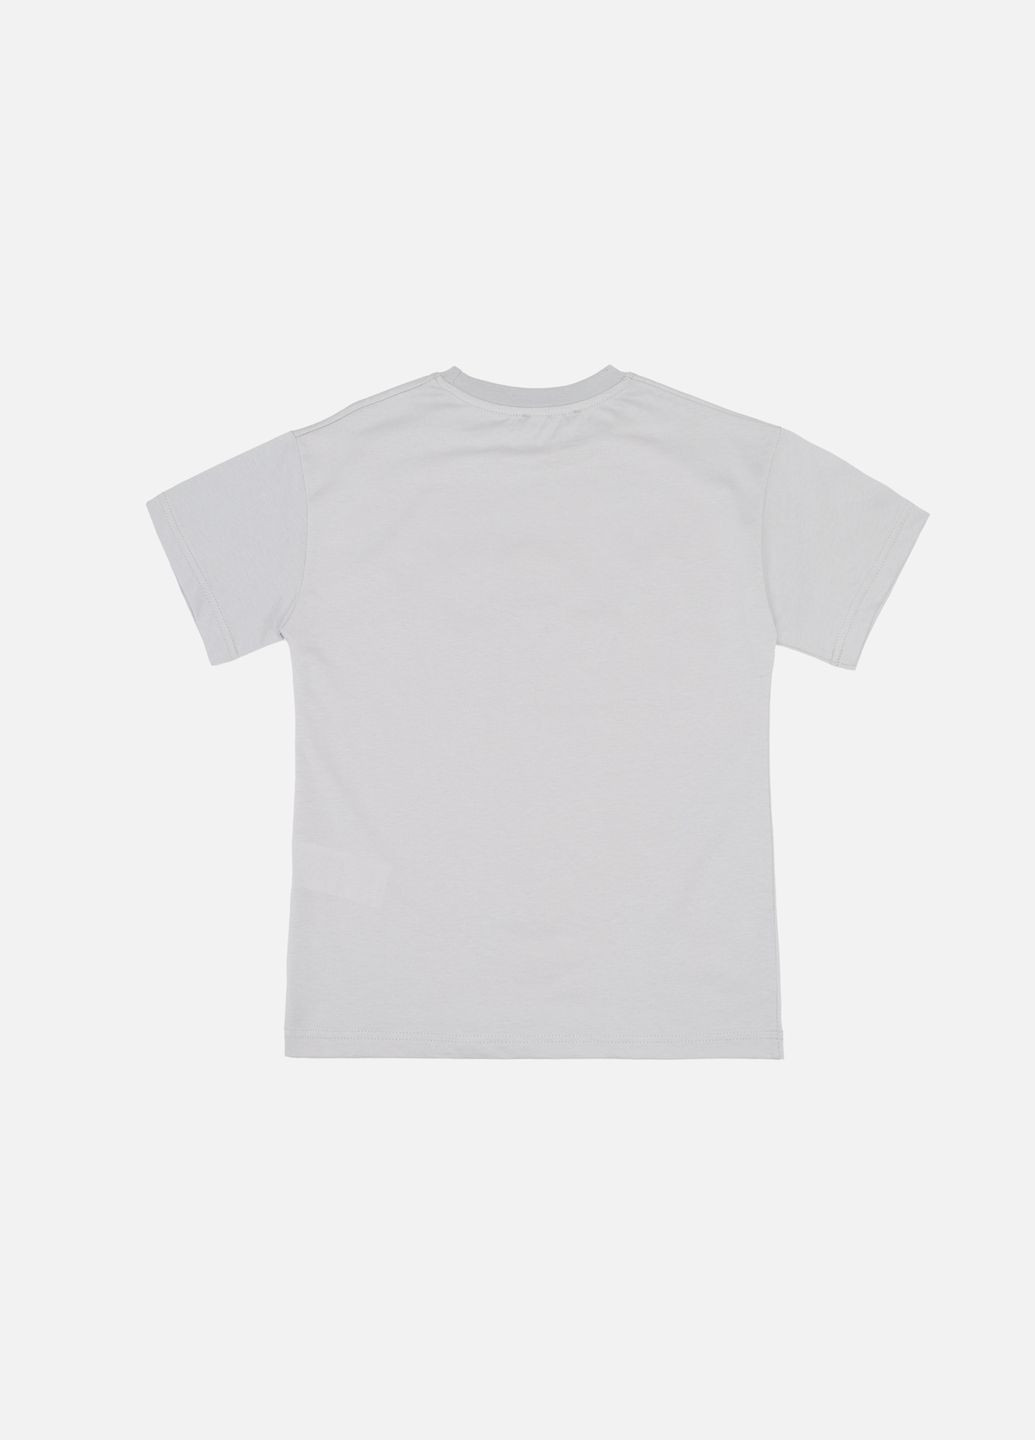 Світло-сіра літня футболка з коротким рукавом для хлопчика колір світло-сірий цб-00246441 First Kids